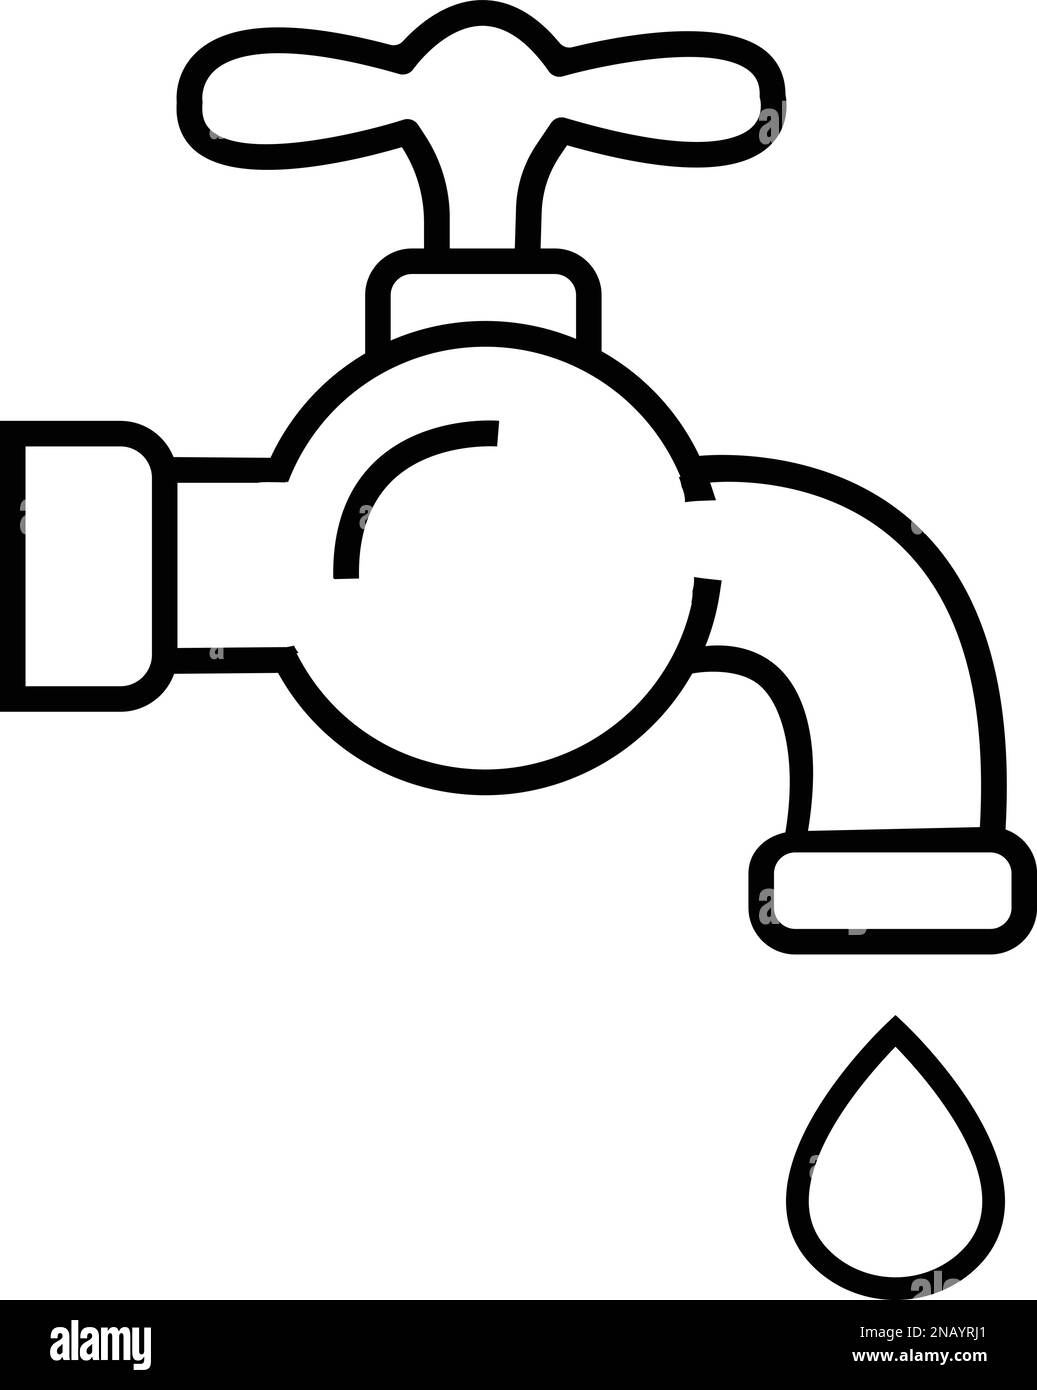 Symbol für Wasserhahn. Wasserhahn. Wasserhahn-Symbol im Badezimmer zeigt  einen Vorratsvektor im Stil einer Kontur an. Wasser Null Stock-Vektorgrafik  - Alamy